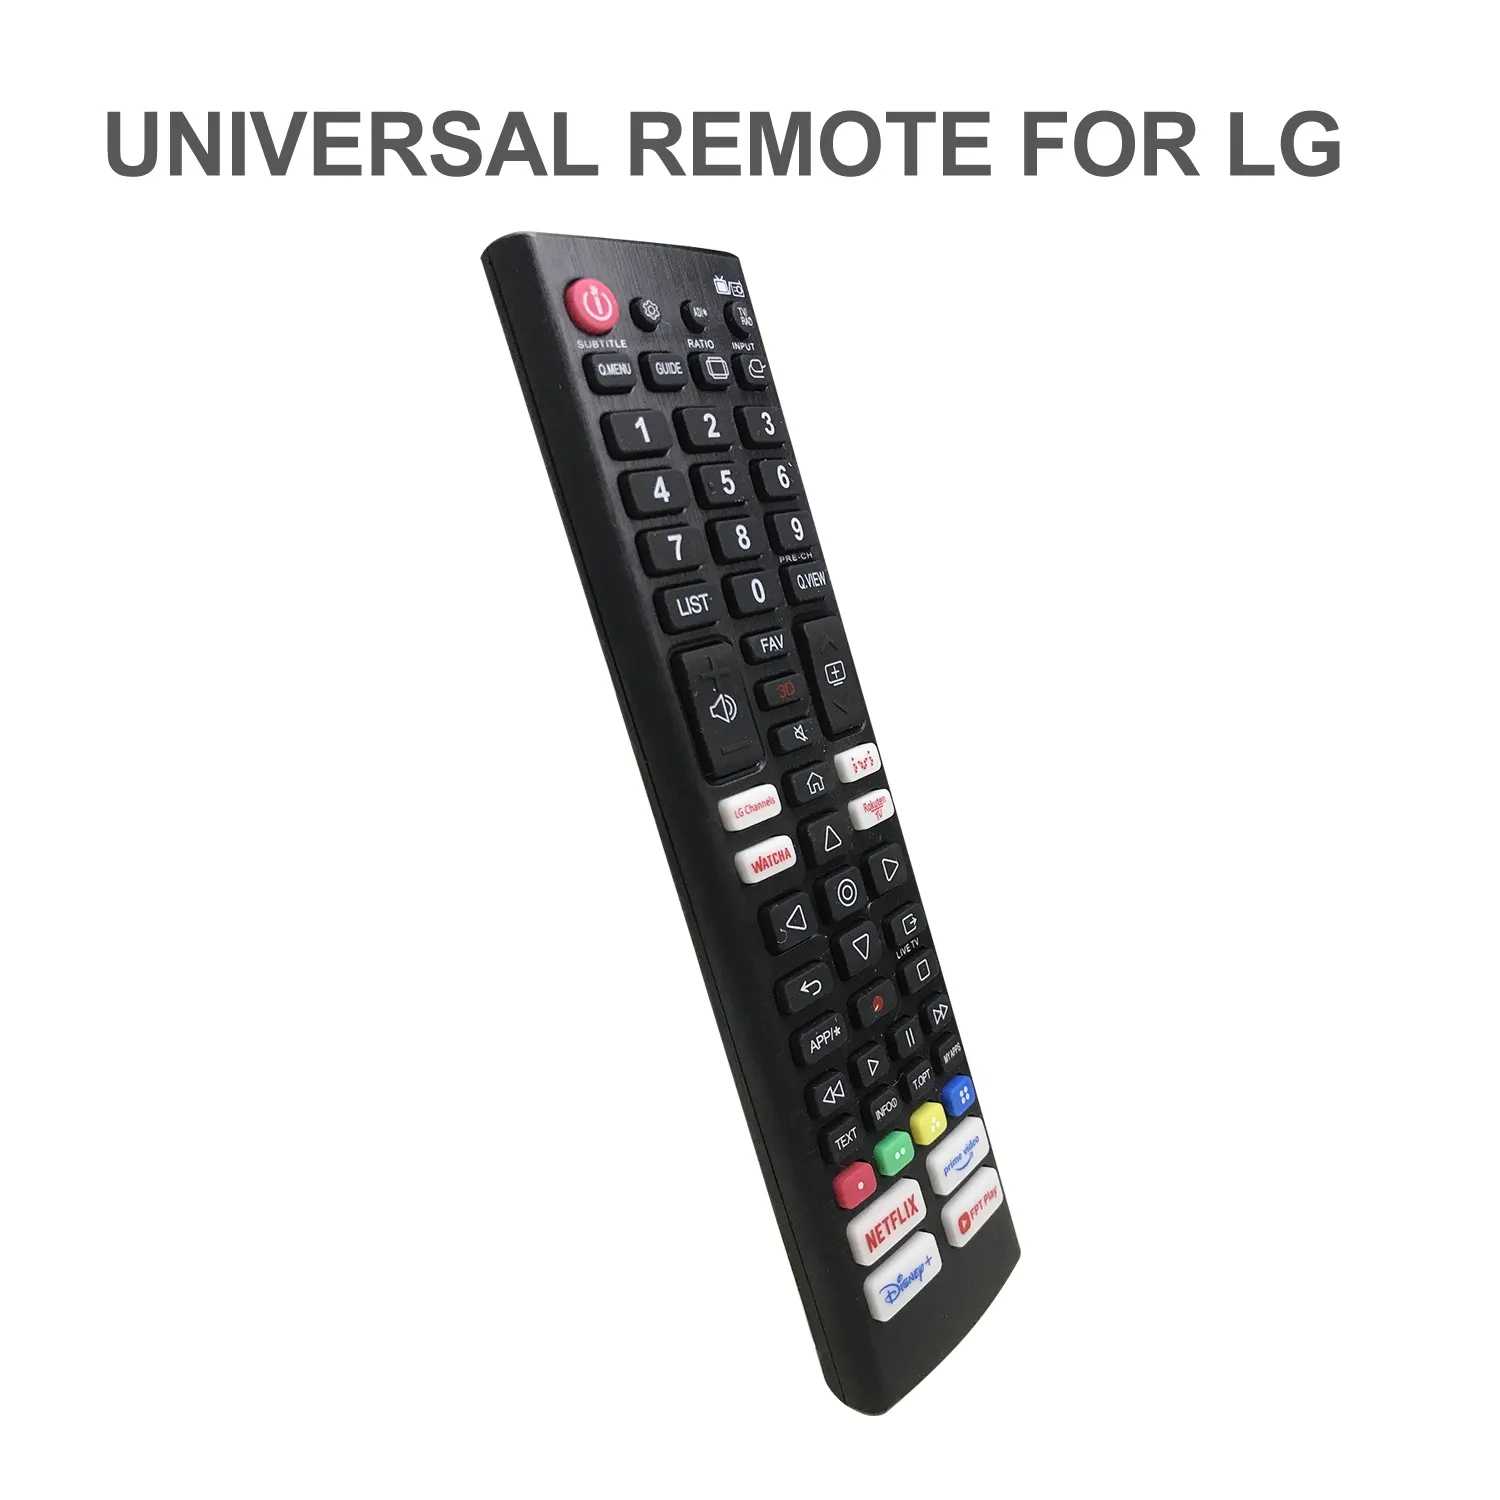 सिस्तो c2303v टीवी रिमोट कंट्रोल Netflix और amazon बटन के साथ lg संचालित स्मार्ट टीवी के लिए kb75095308 के बजाय हो सकता है।